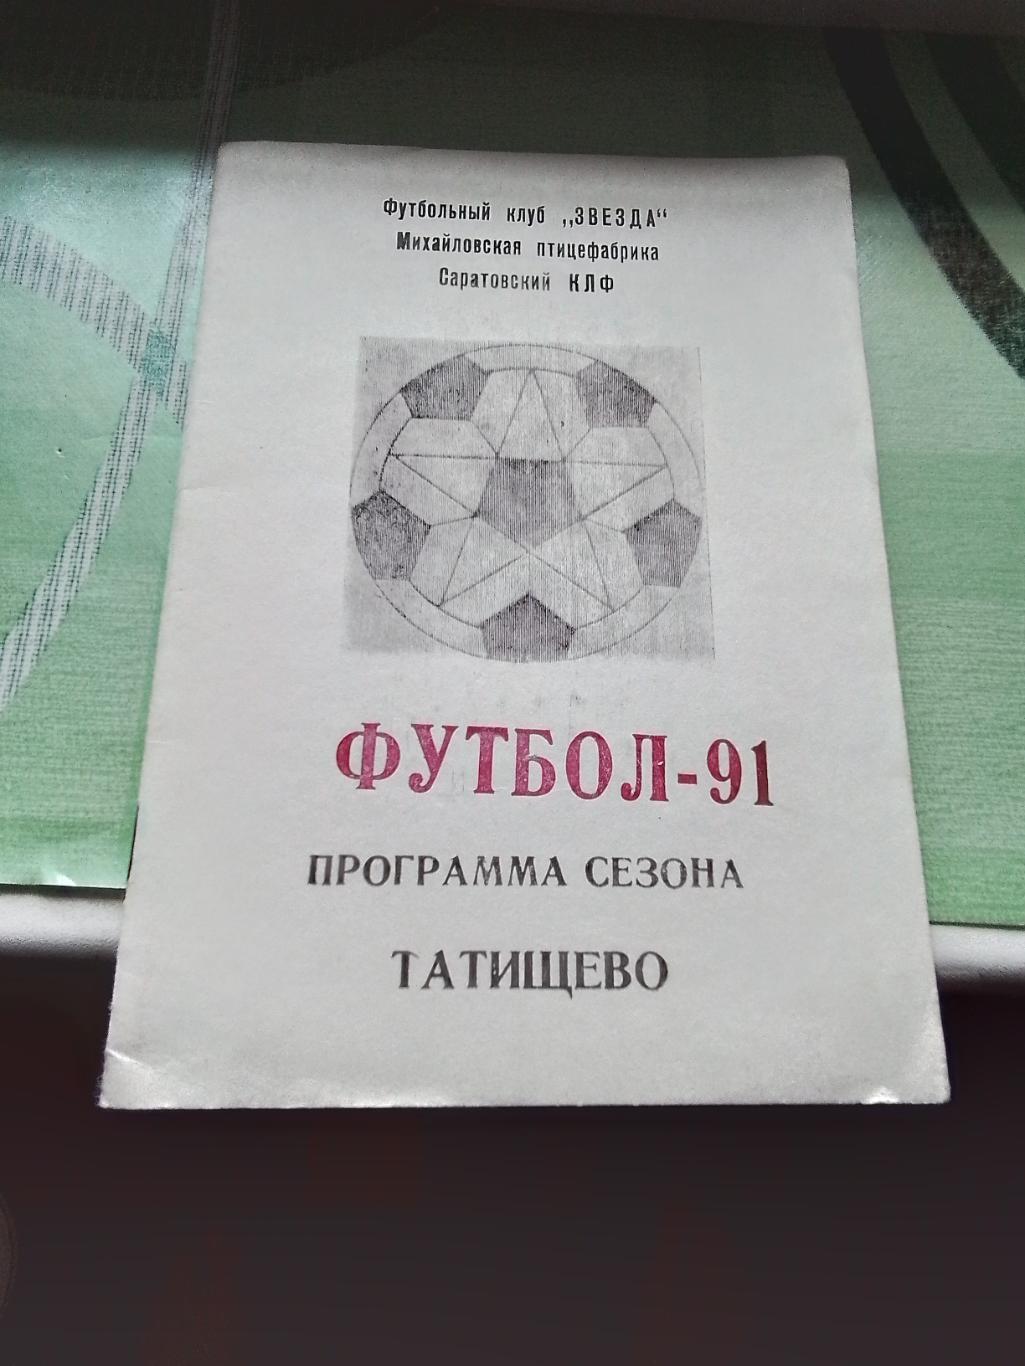 Программа сезона календарь Татищево Саратов ская область 1991